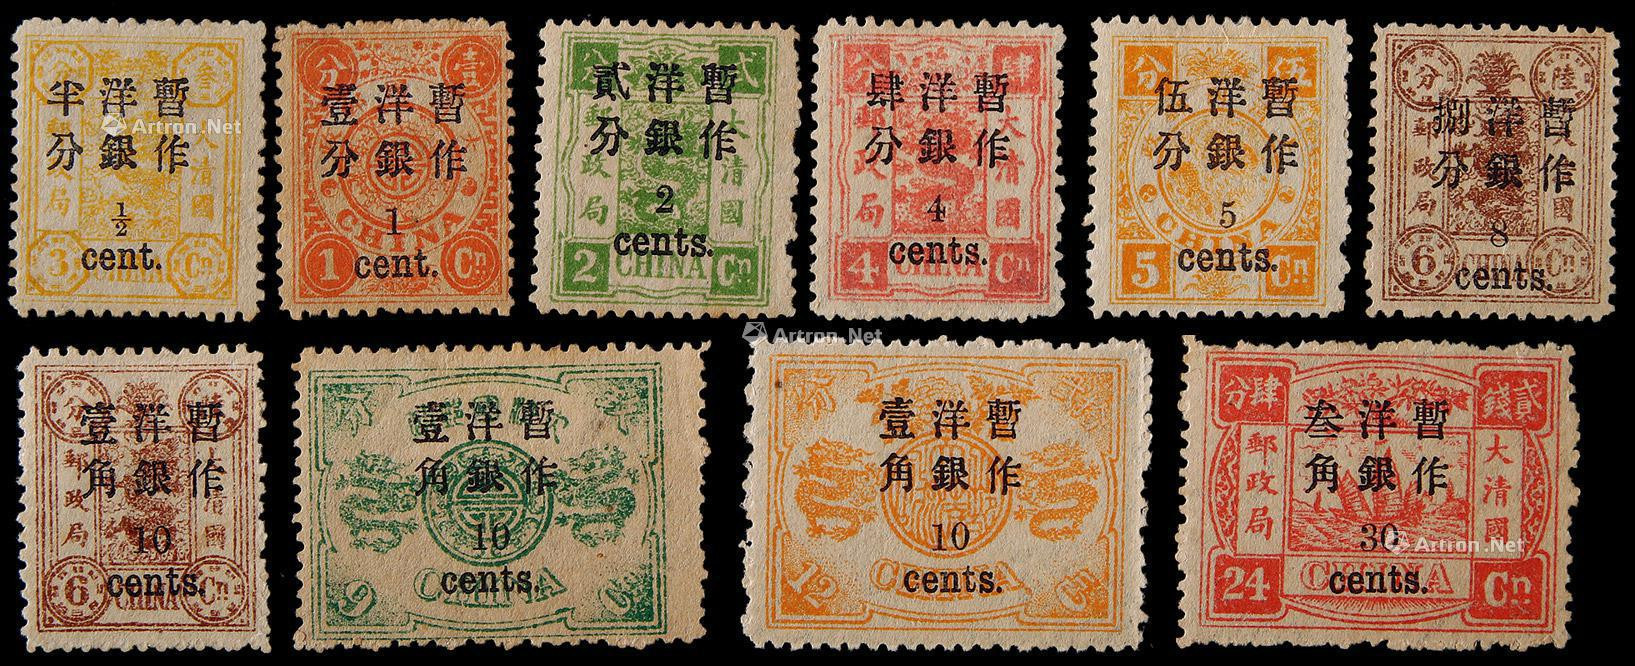 1897年初版慈寿小字加盖改值新票全套10枚